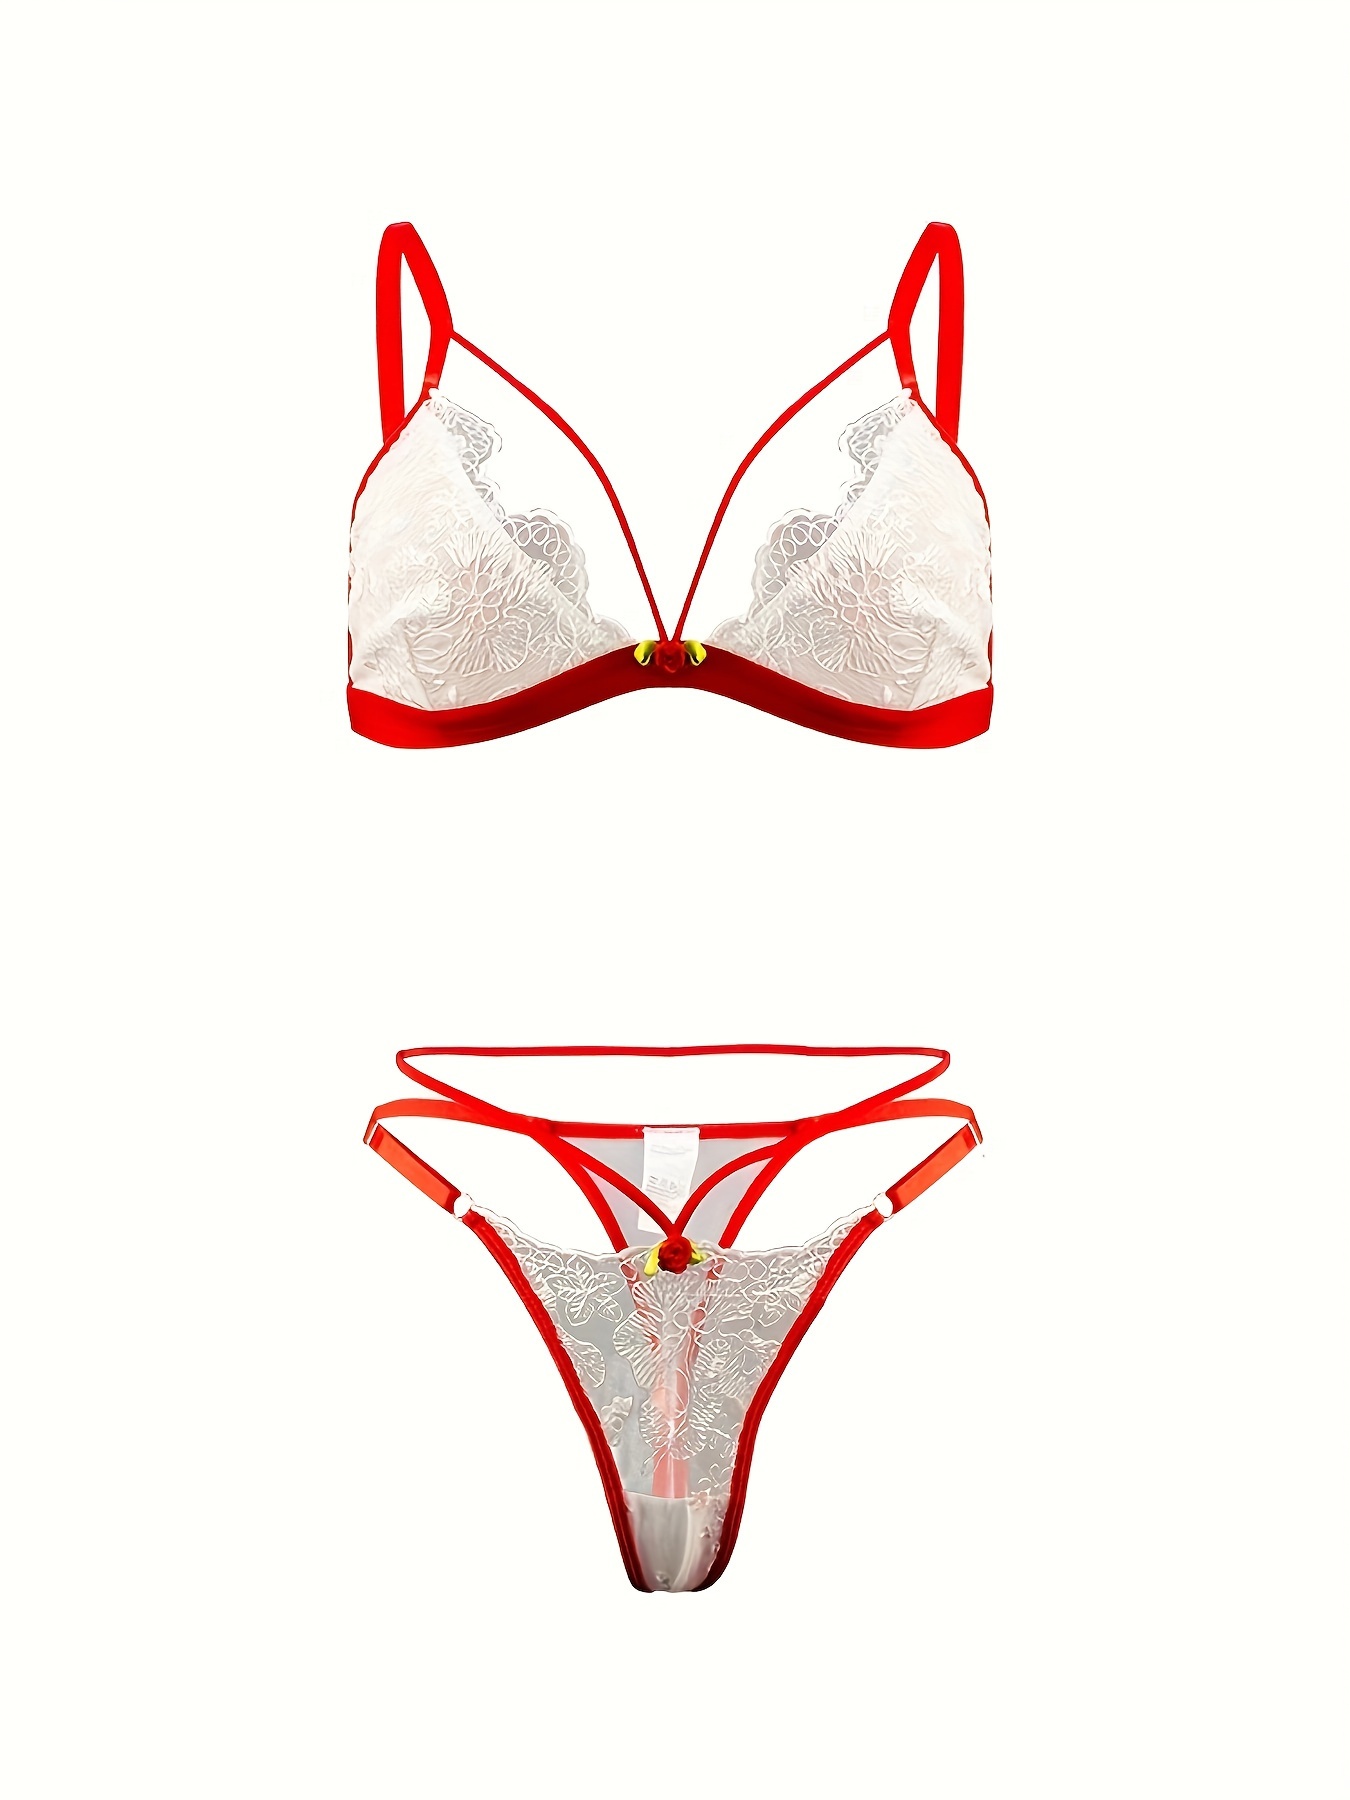 Contrast Lace Bra & Panties, Cut Out Push Up Bra & Elastic Thong Lingerie  Set, Women's Lingerie & Underwear